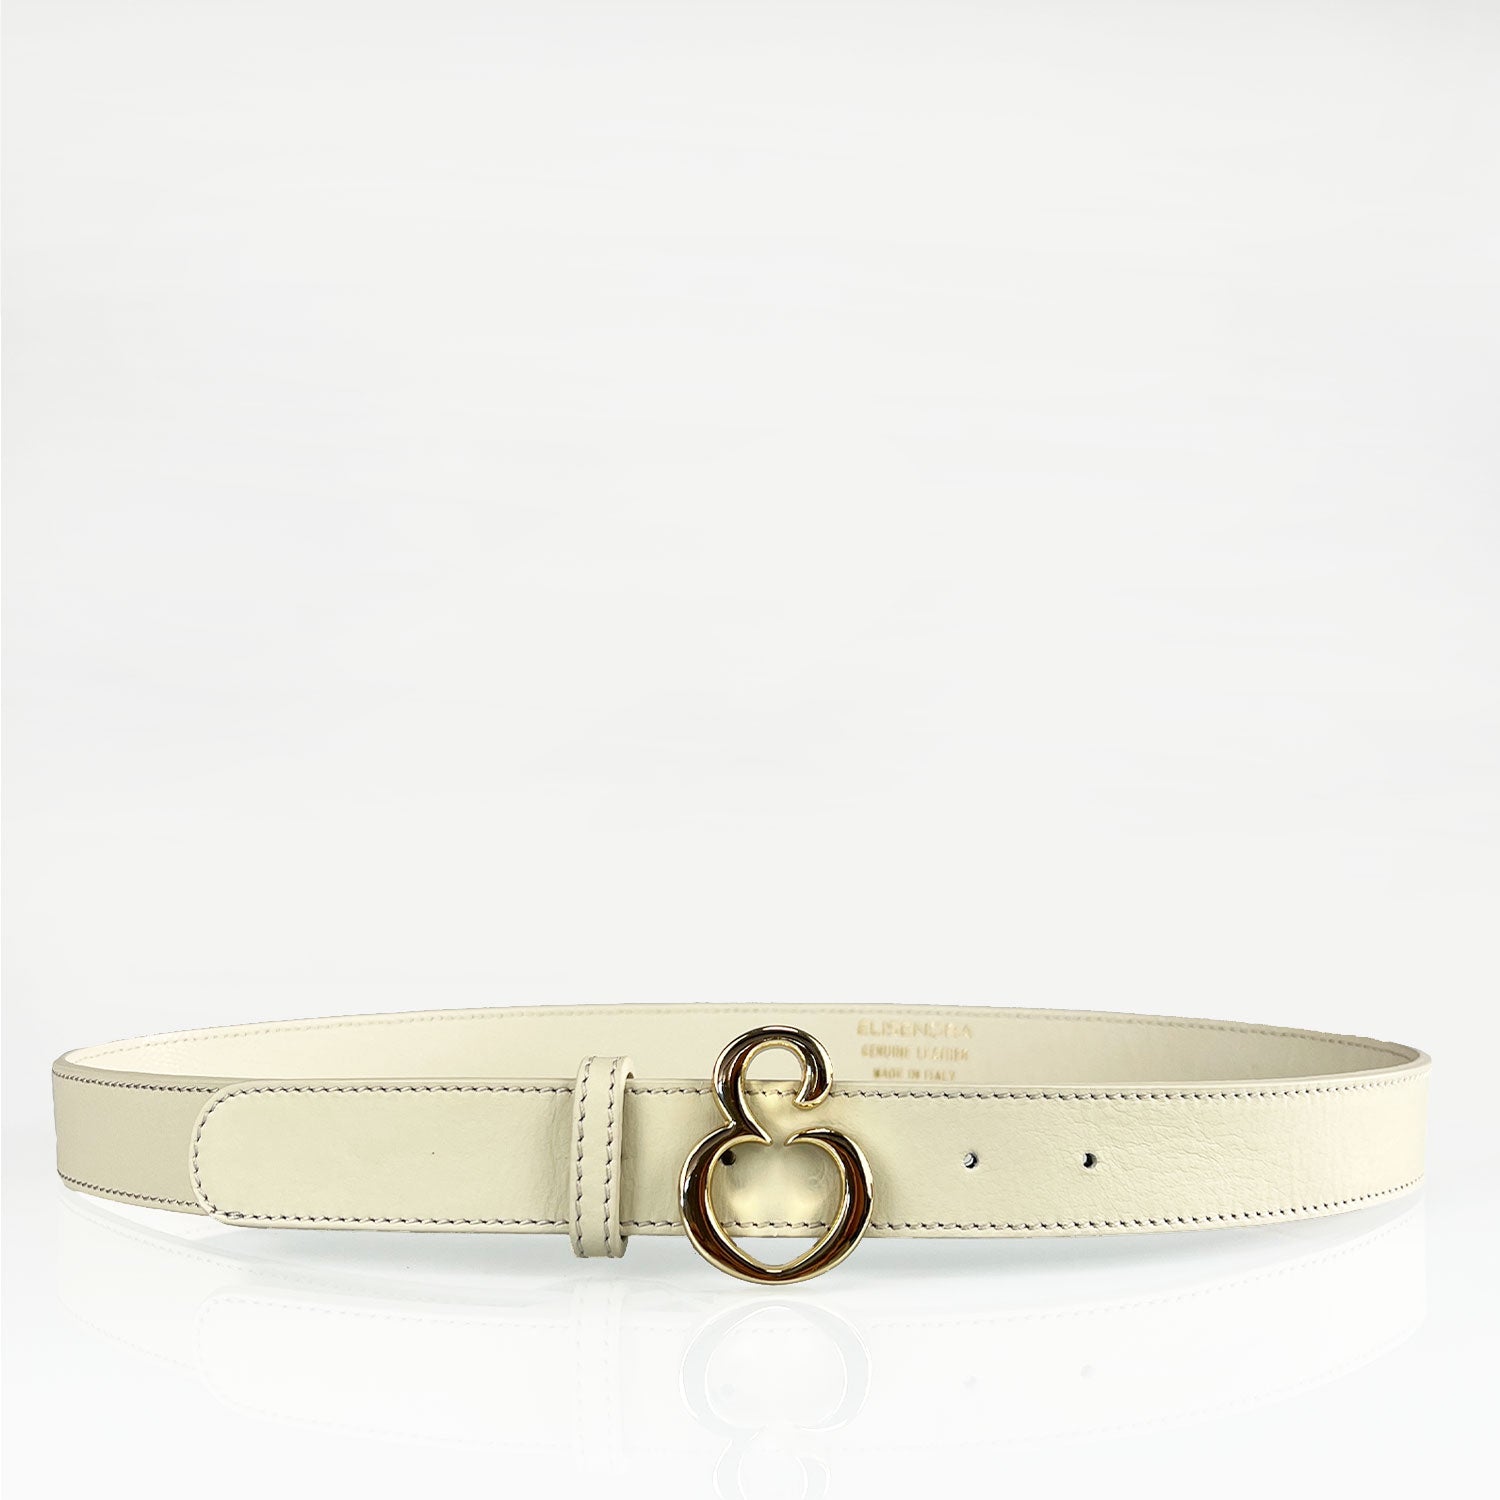 Dafne – Cintura Donna 3 cm – Nappa Burro